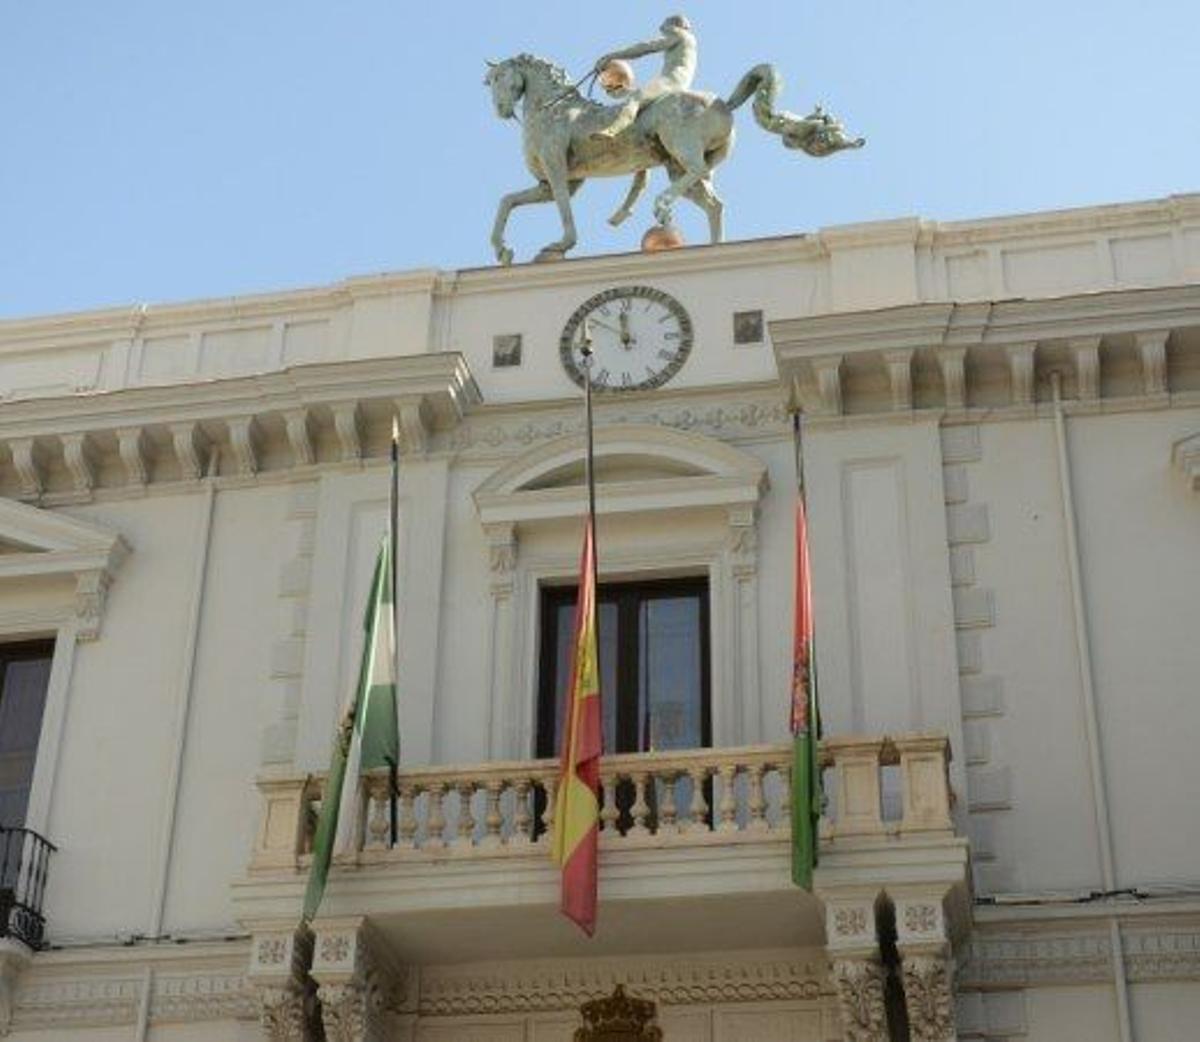 Fachada del Ayuntamiento de Granada.